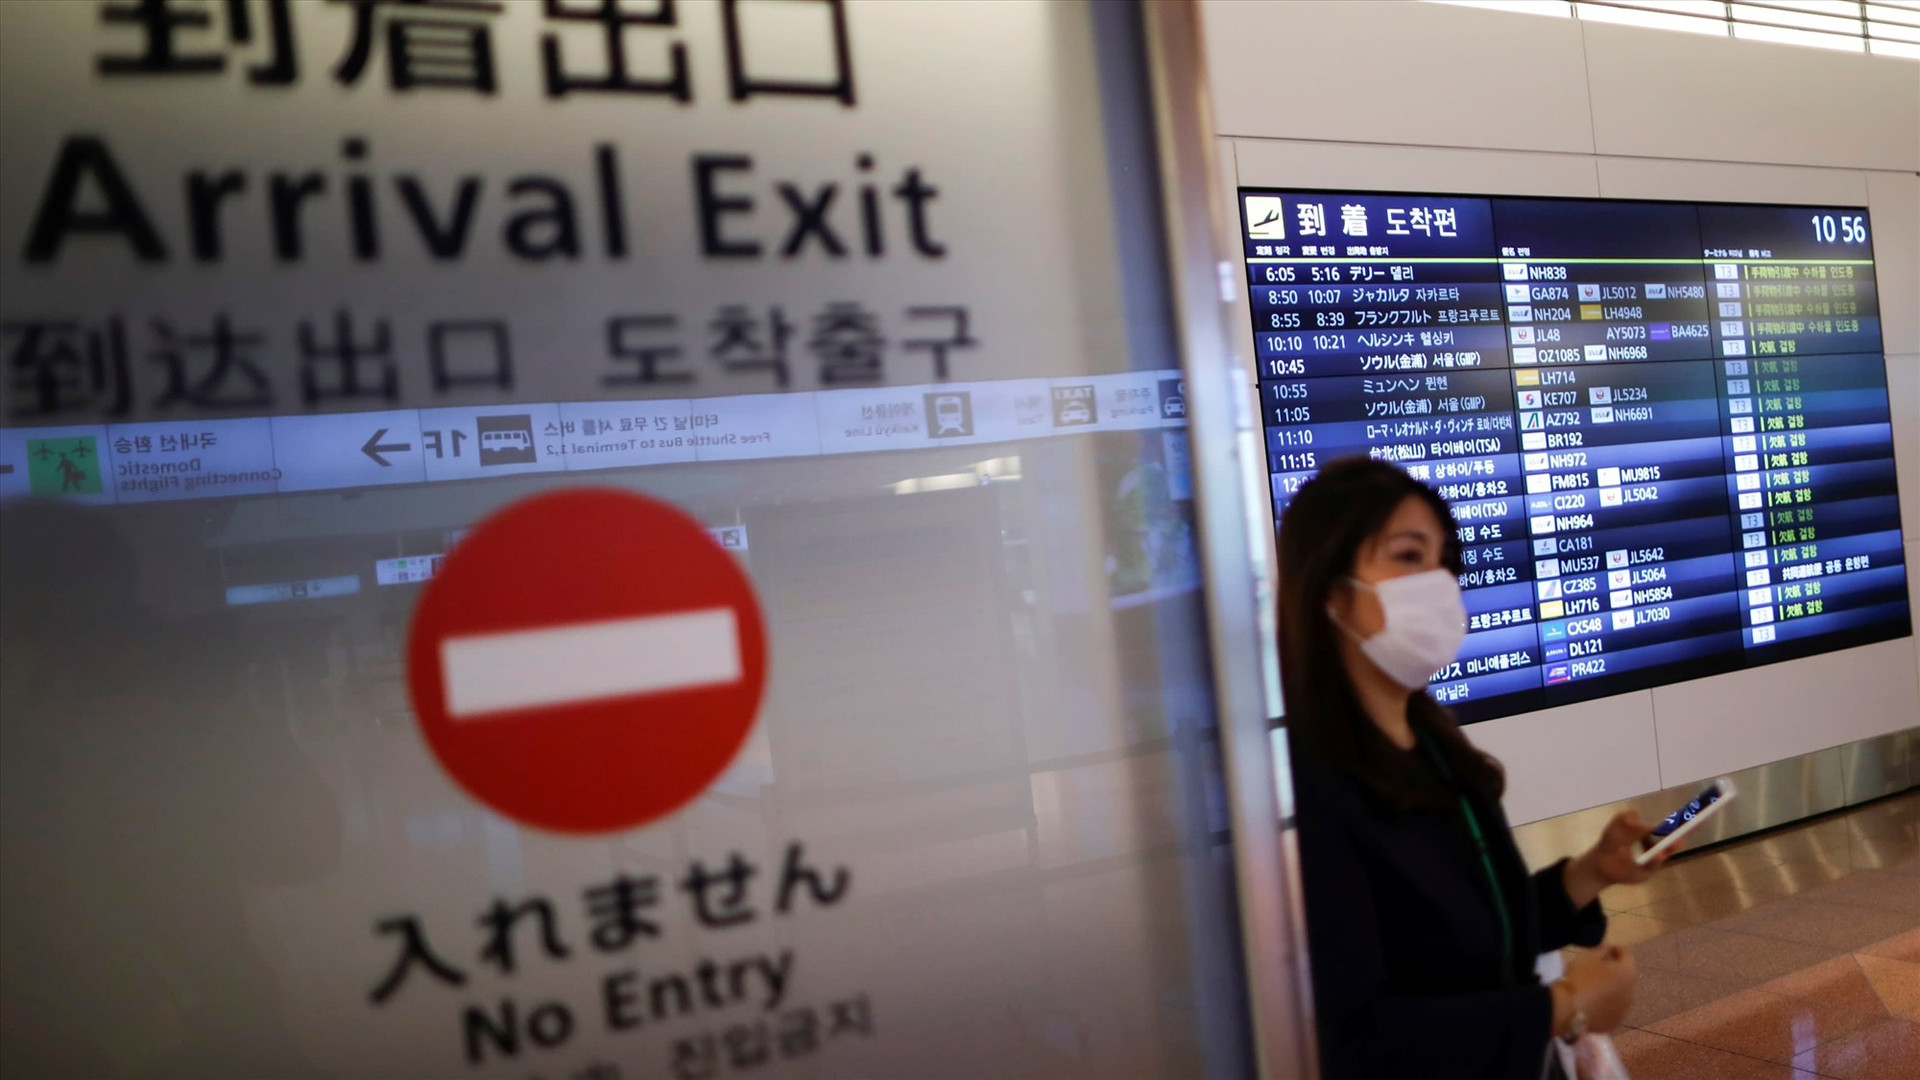 Một cổng đến tại sân bay Haneda (Tokyo), nơi phát hiện chủng biến thể mới nhất của corona trong 4 hành khách đến từ Brazil. Ảnh: Reuters